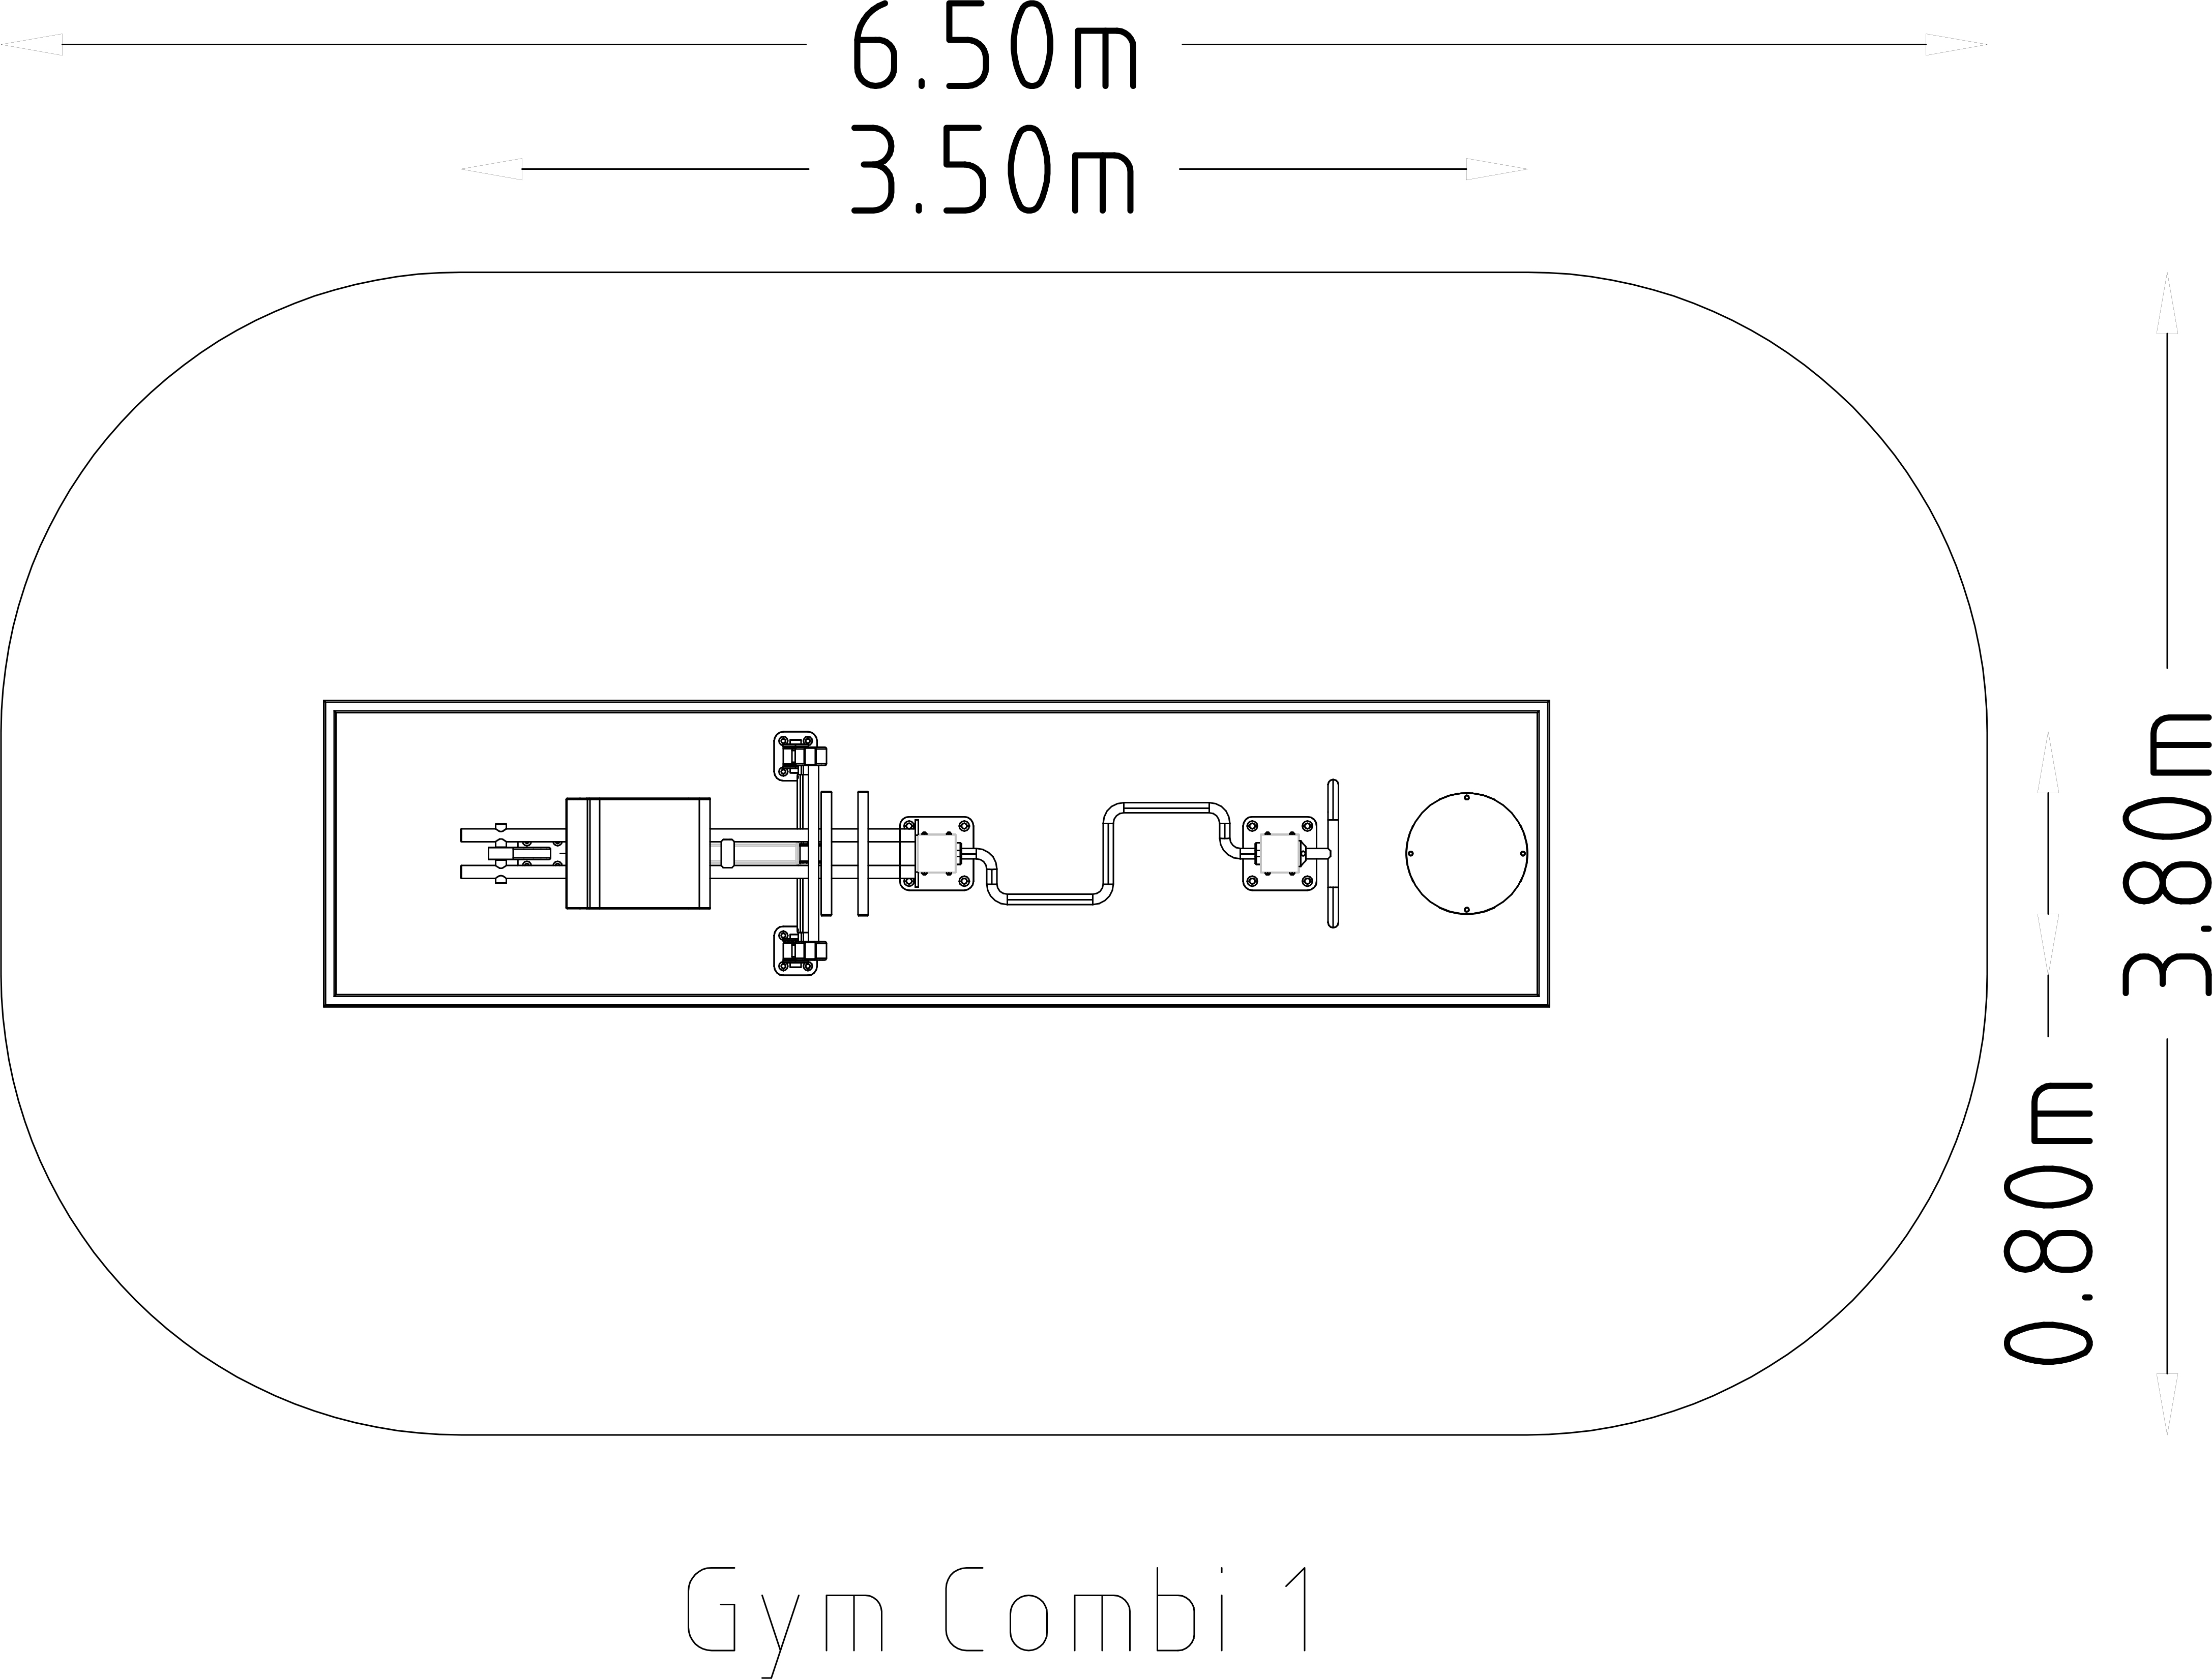 Denfit Gym Combi 1